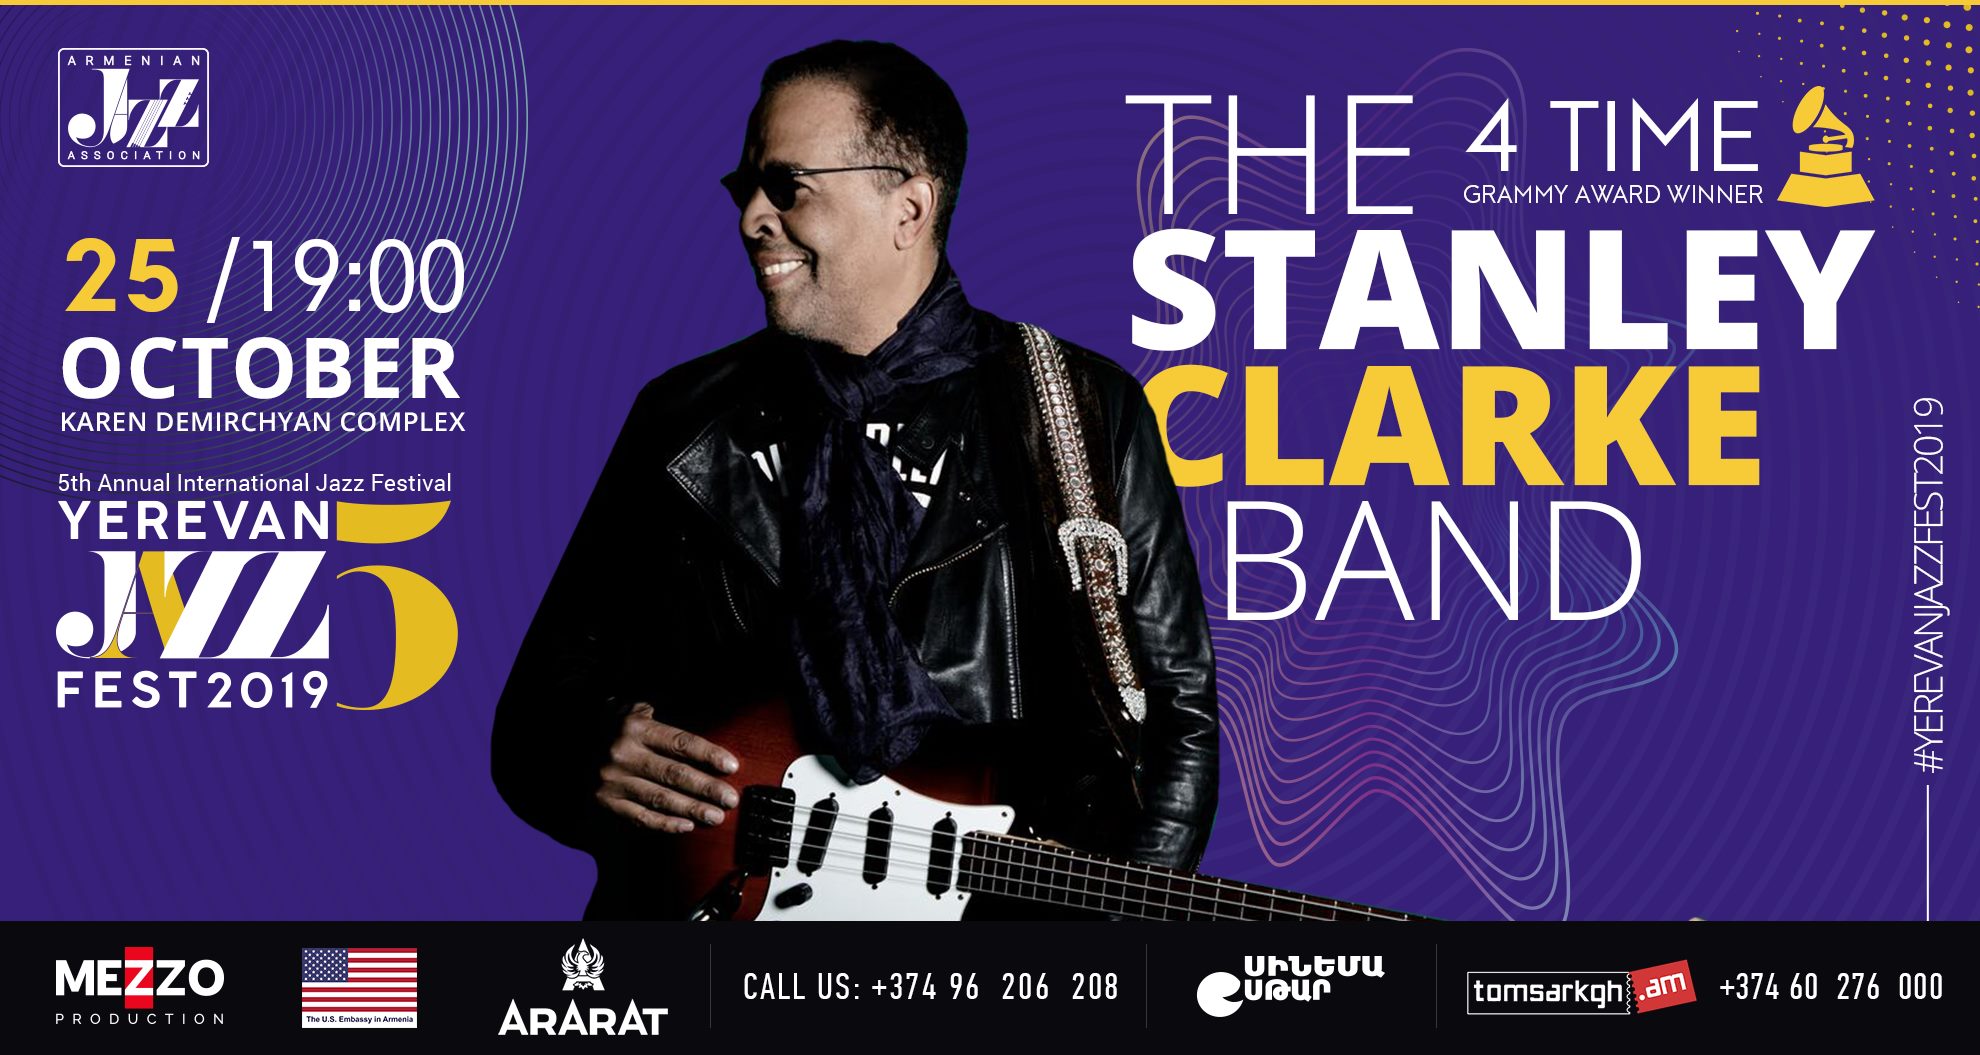 Սթենլի Քլարքի ջազ-ռոք համերգով կտրվի Yerevan Jazz Fest 2019-ի մեկնարկը